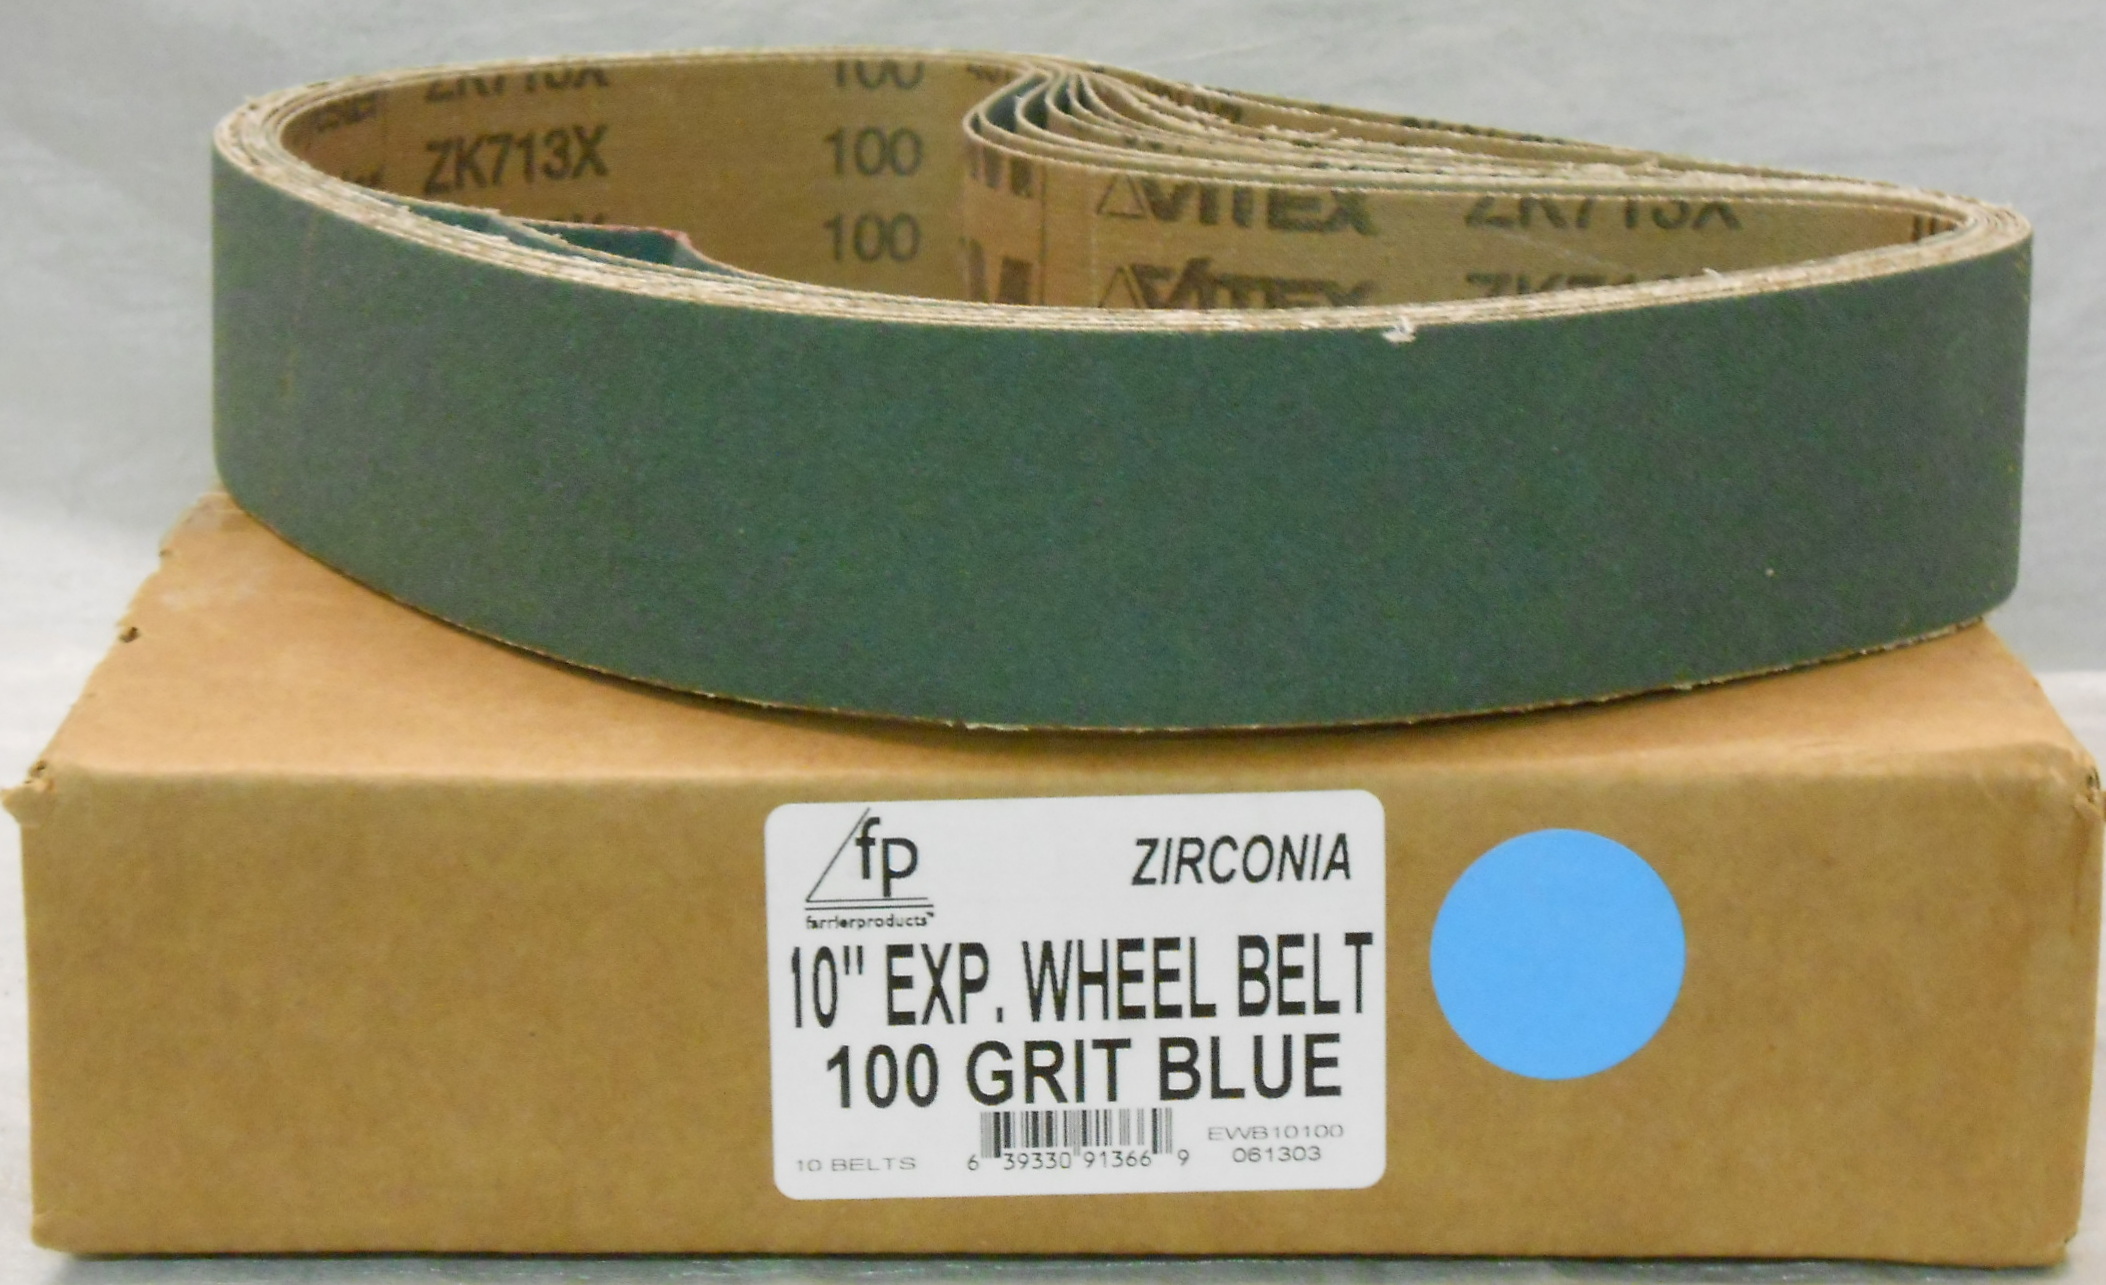 FP 10" Ex Wheel Belt 100 Grit Zirconia - box of 10